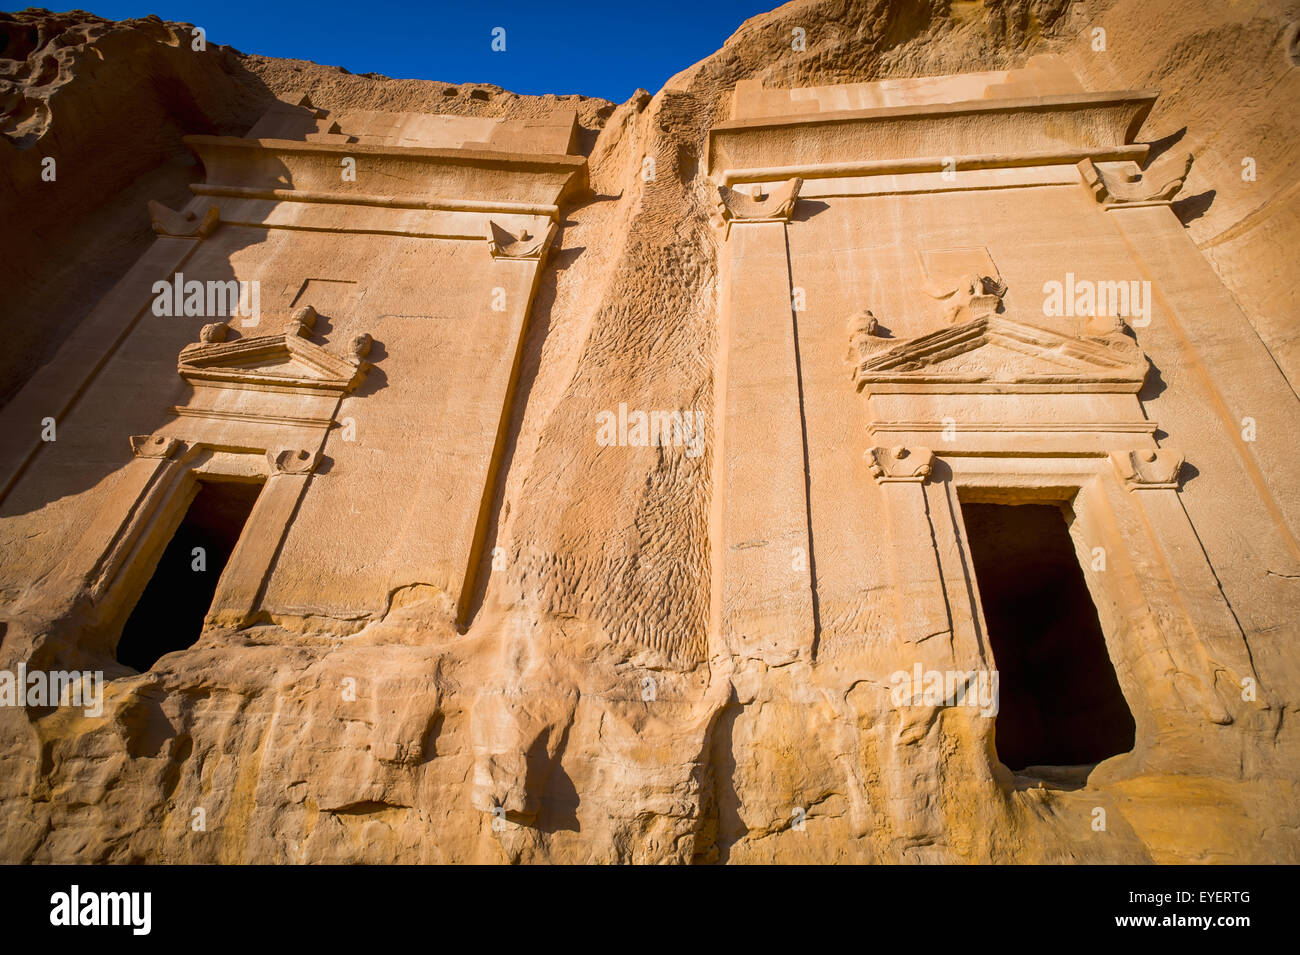 La site archéologique ; Madain Saleh, l'Arabie Saoudite Banque D'Images